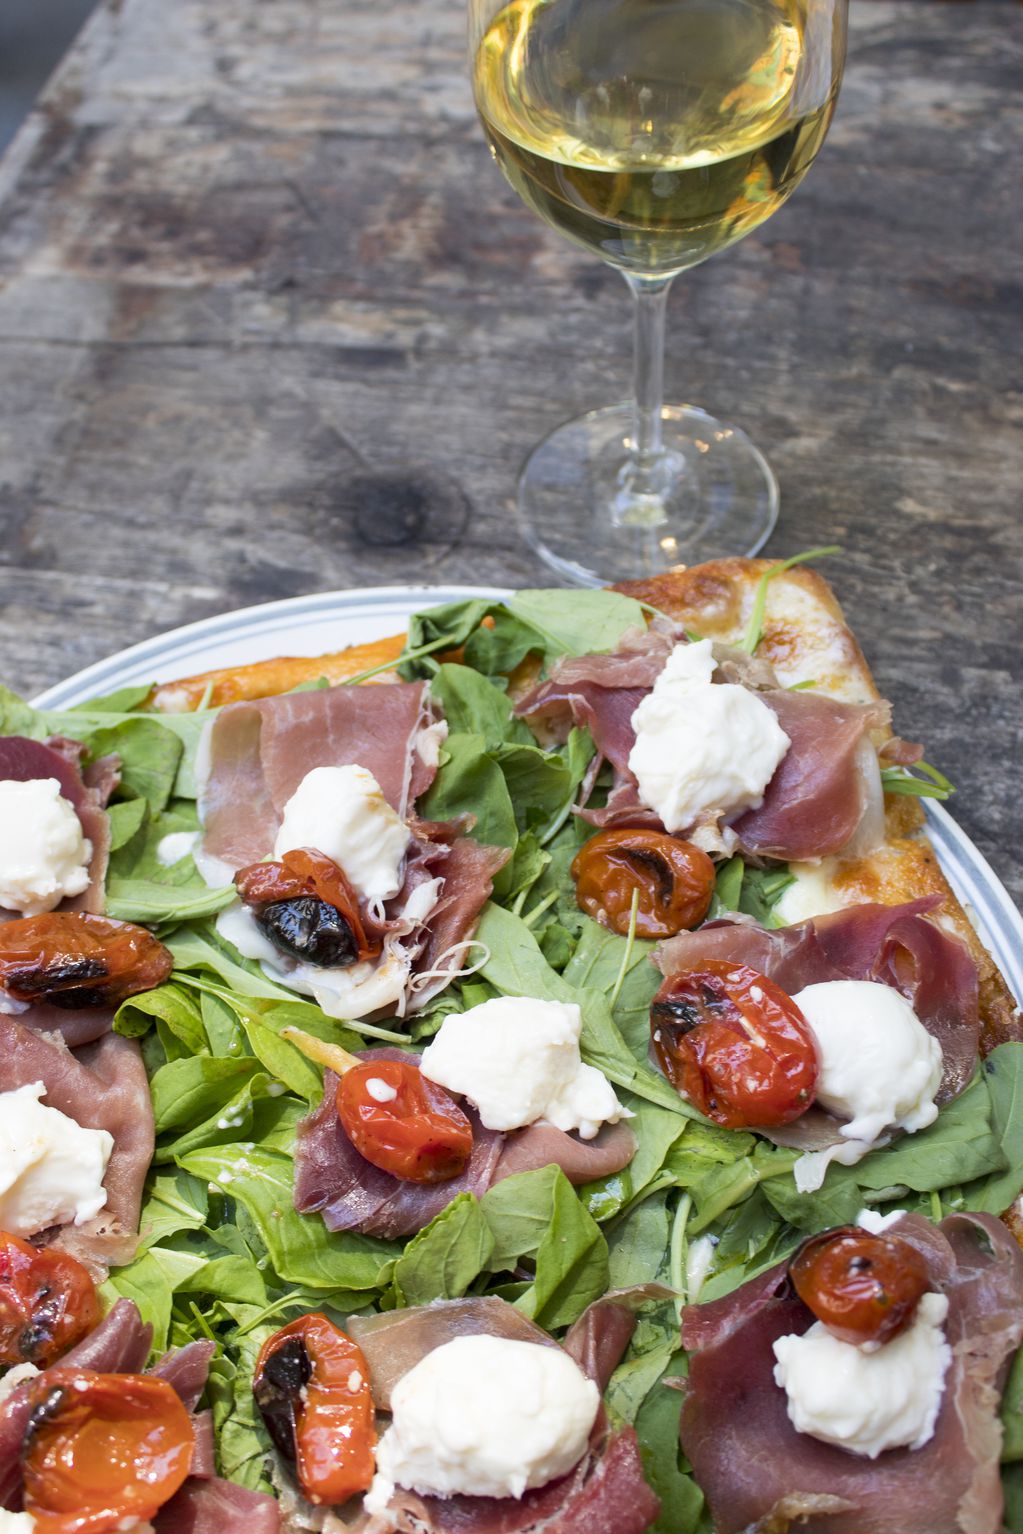 Las pizzas pueden maridarse con los vinos de Píccolo Banfi. - Gentileza